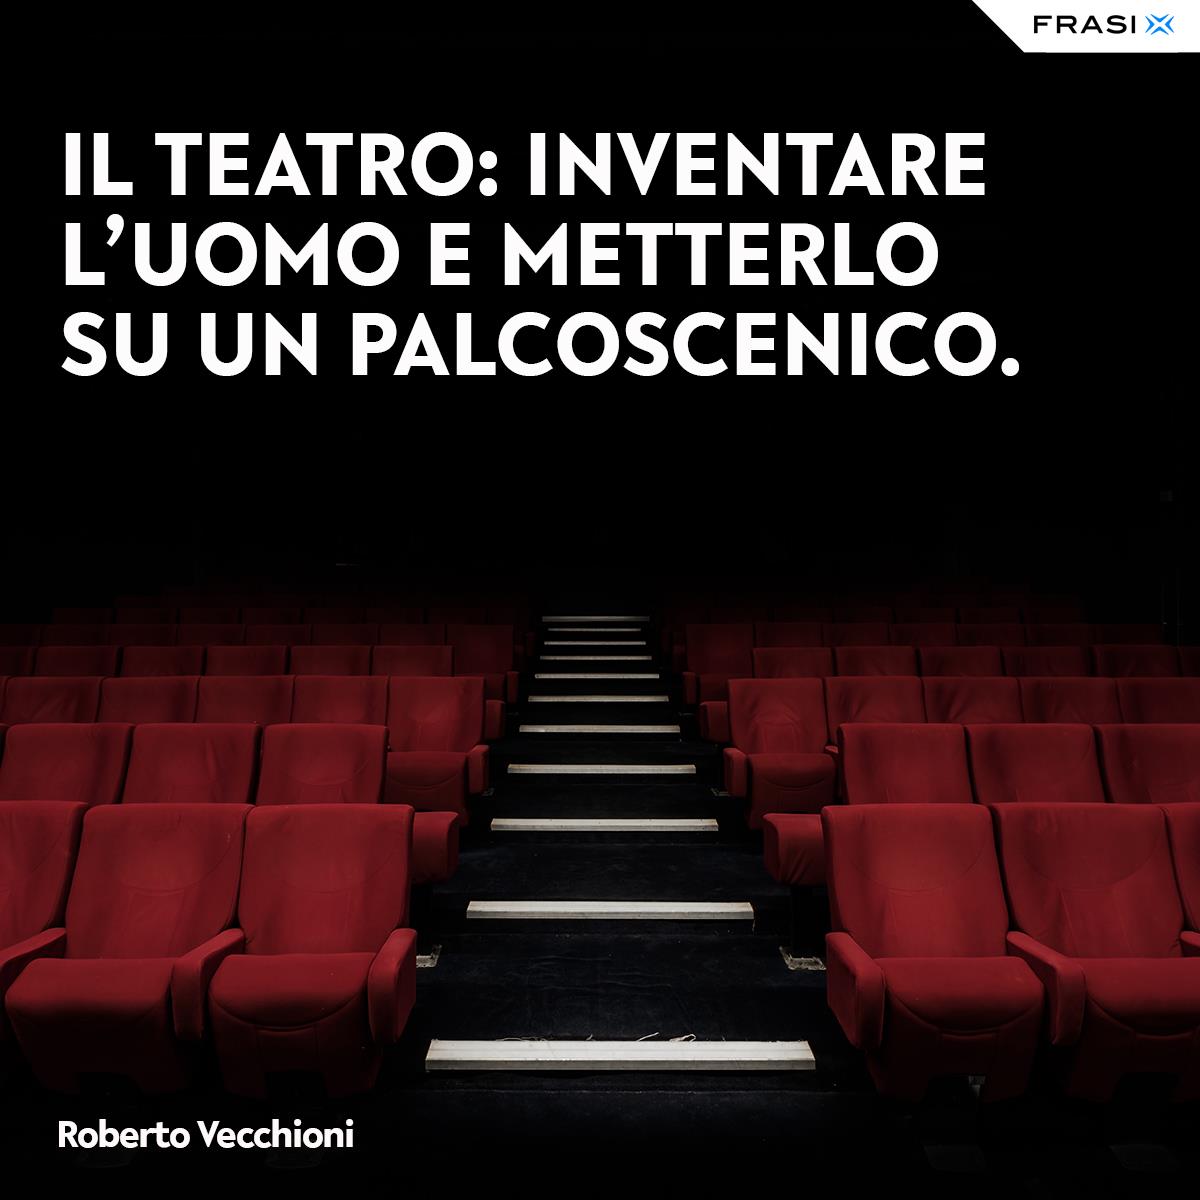 Frasi sul teatro di Roberto Vecchioni